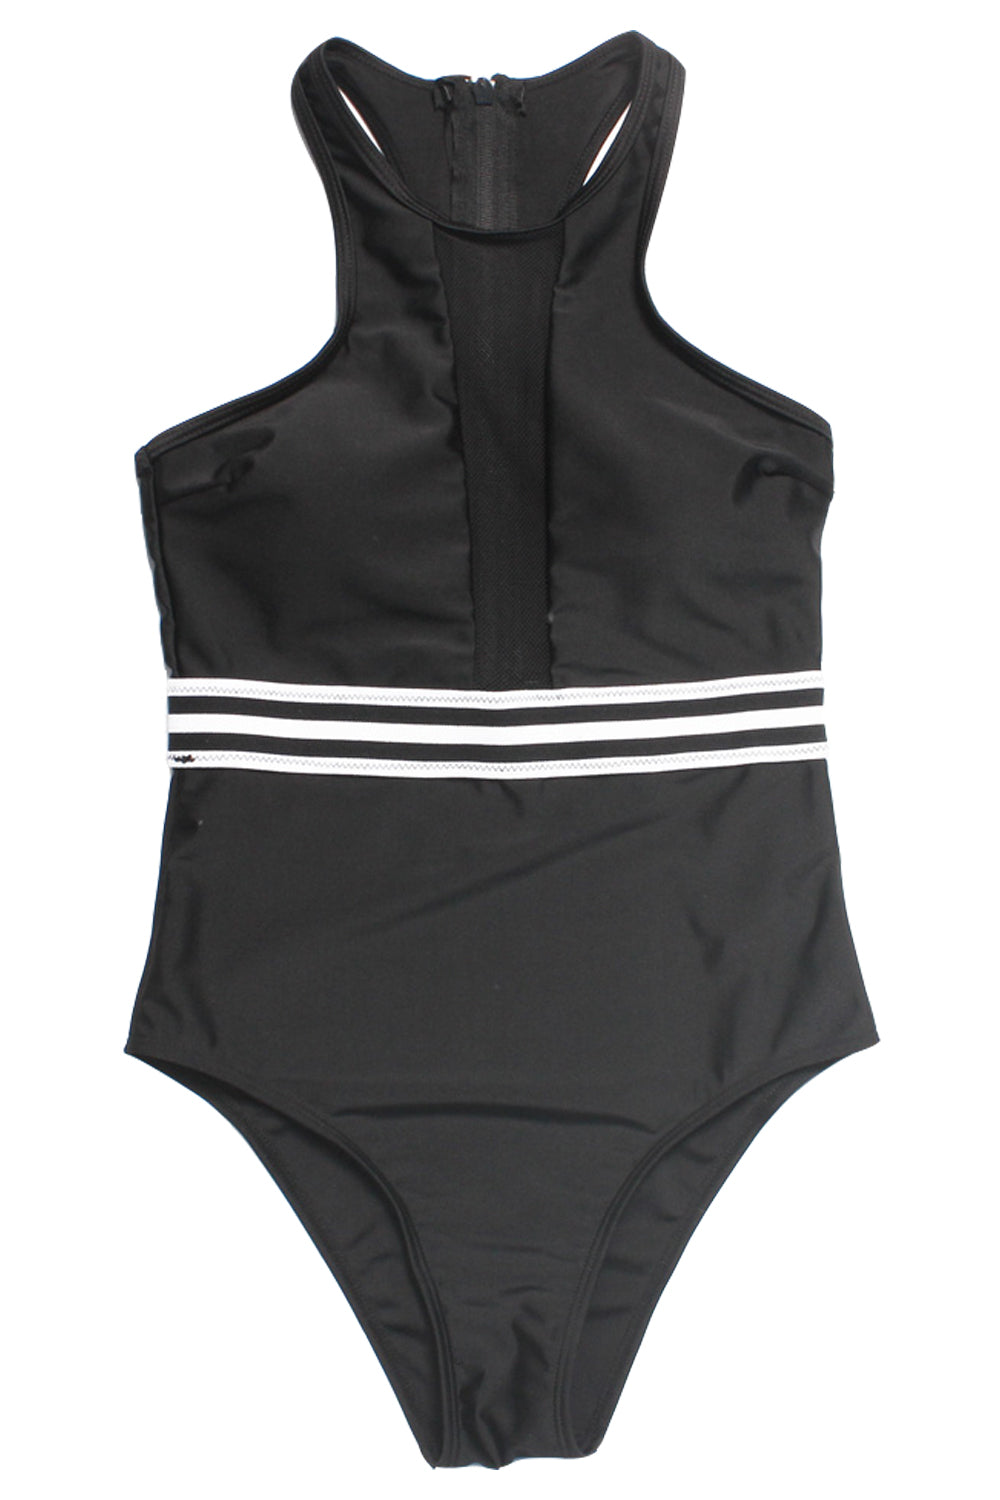 Iyasson Black See Through High-neckline One-piece Swimsuit